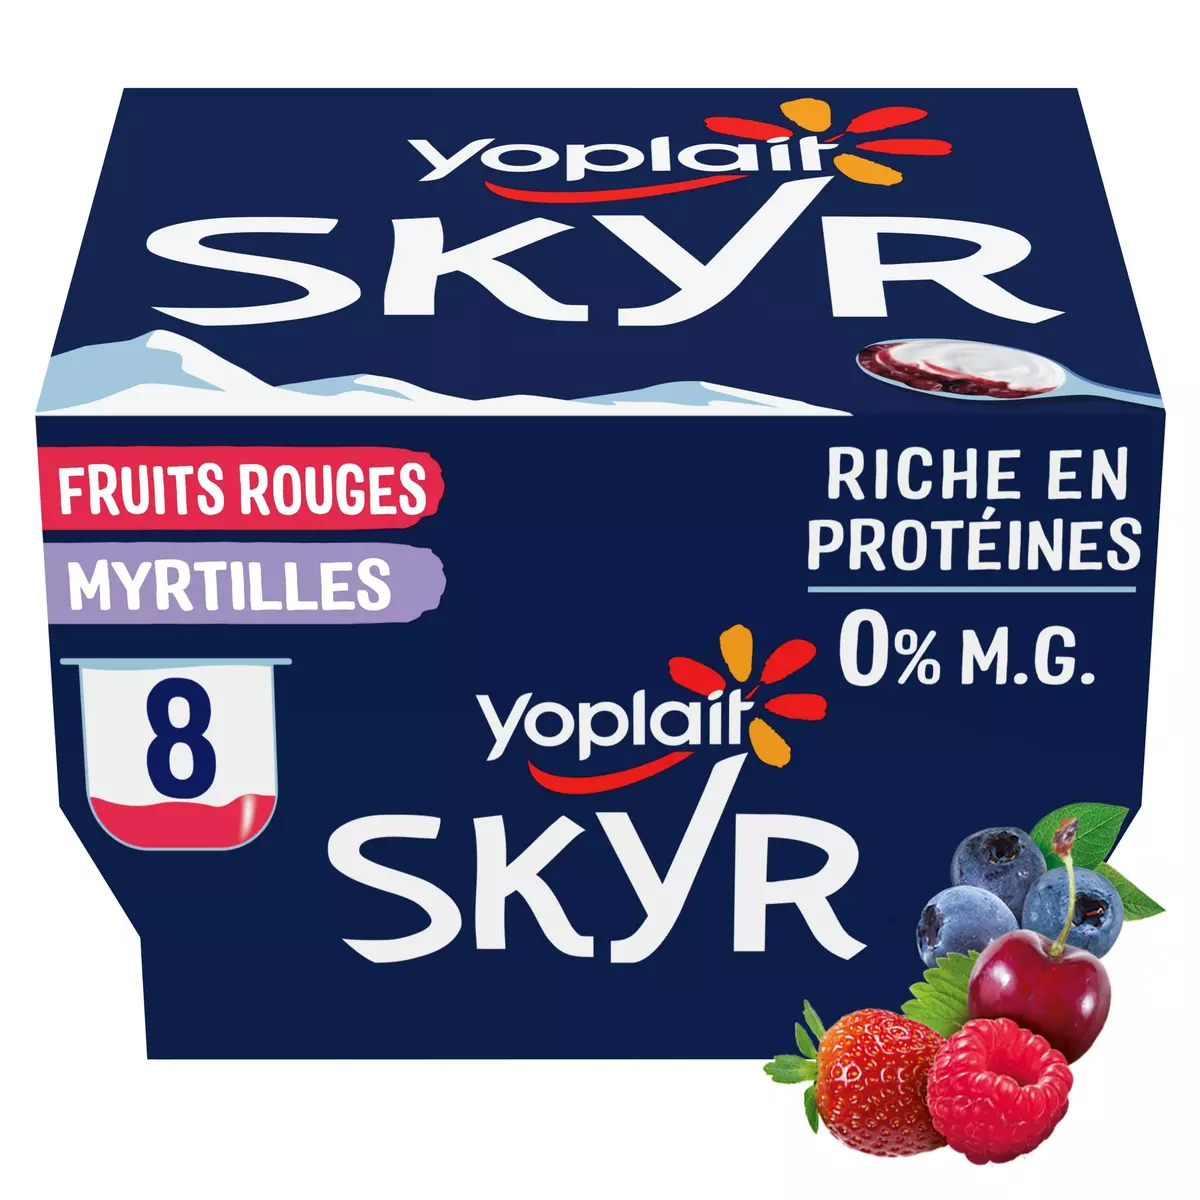 YOPLAIT Skyr fruits rouges myrtilles 0% recette islandaise 8x100g